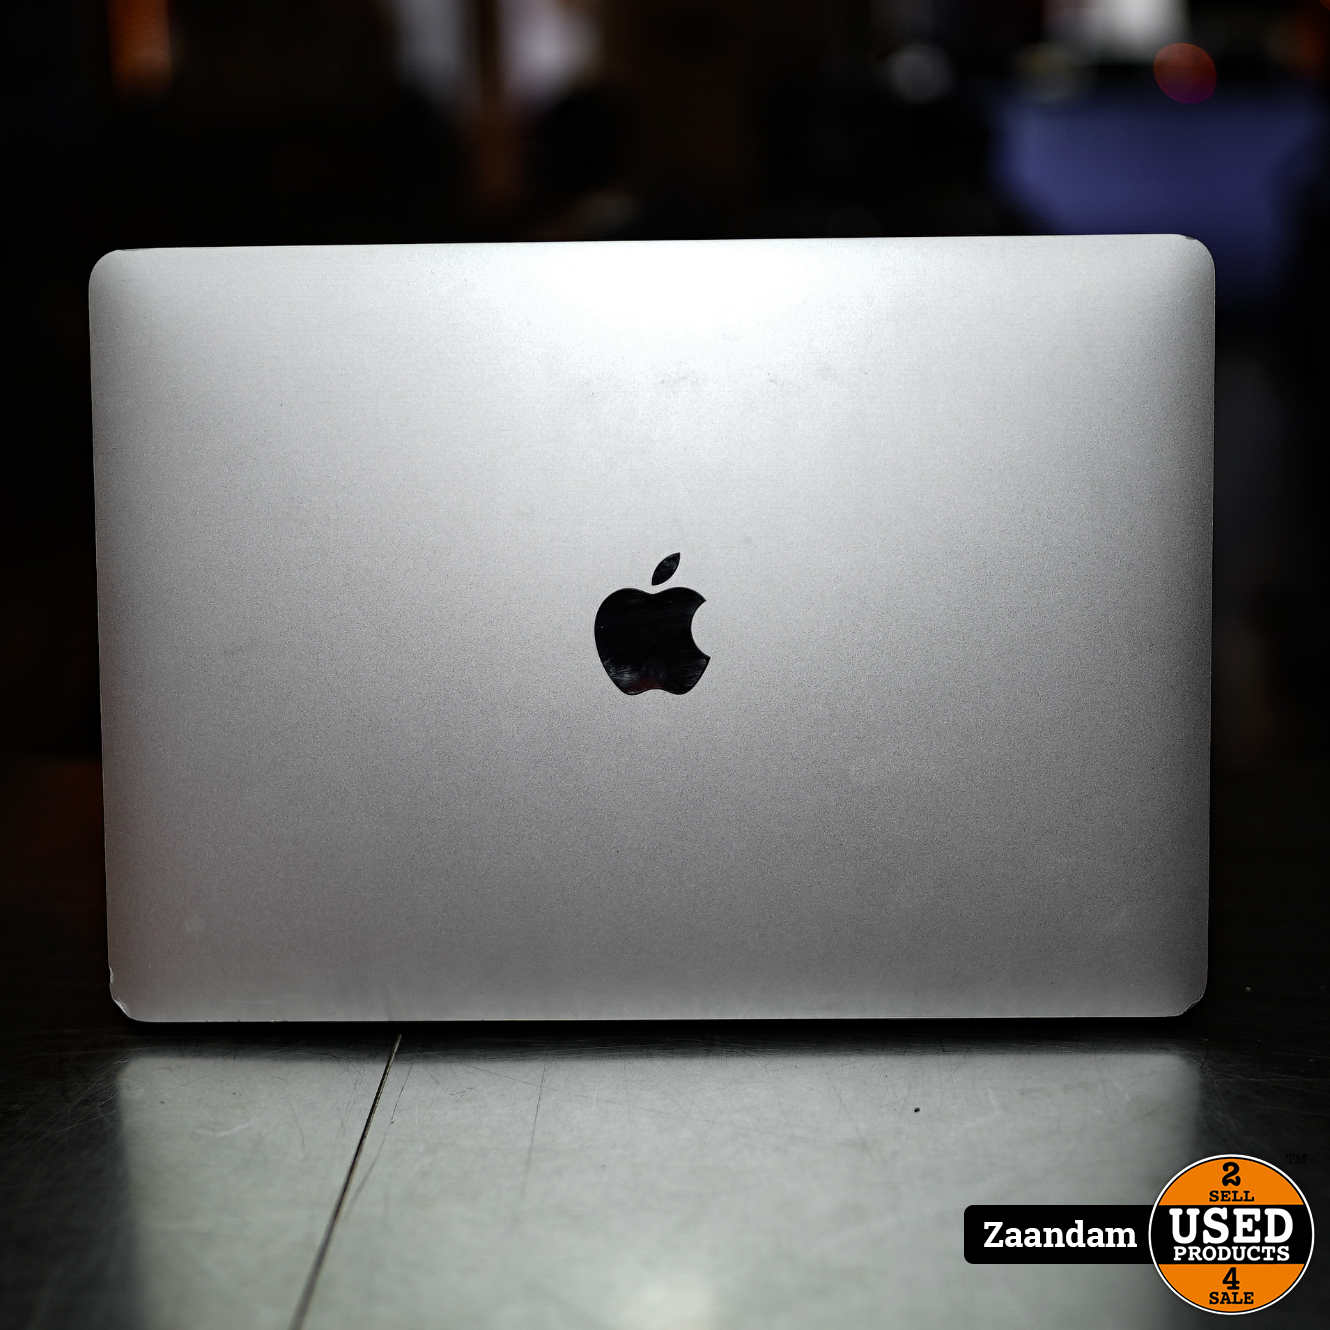 Macbook Pro Laptop | i5 8GB 128GB | Incl. Used Products Zaandam